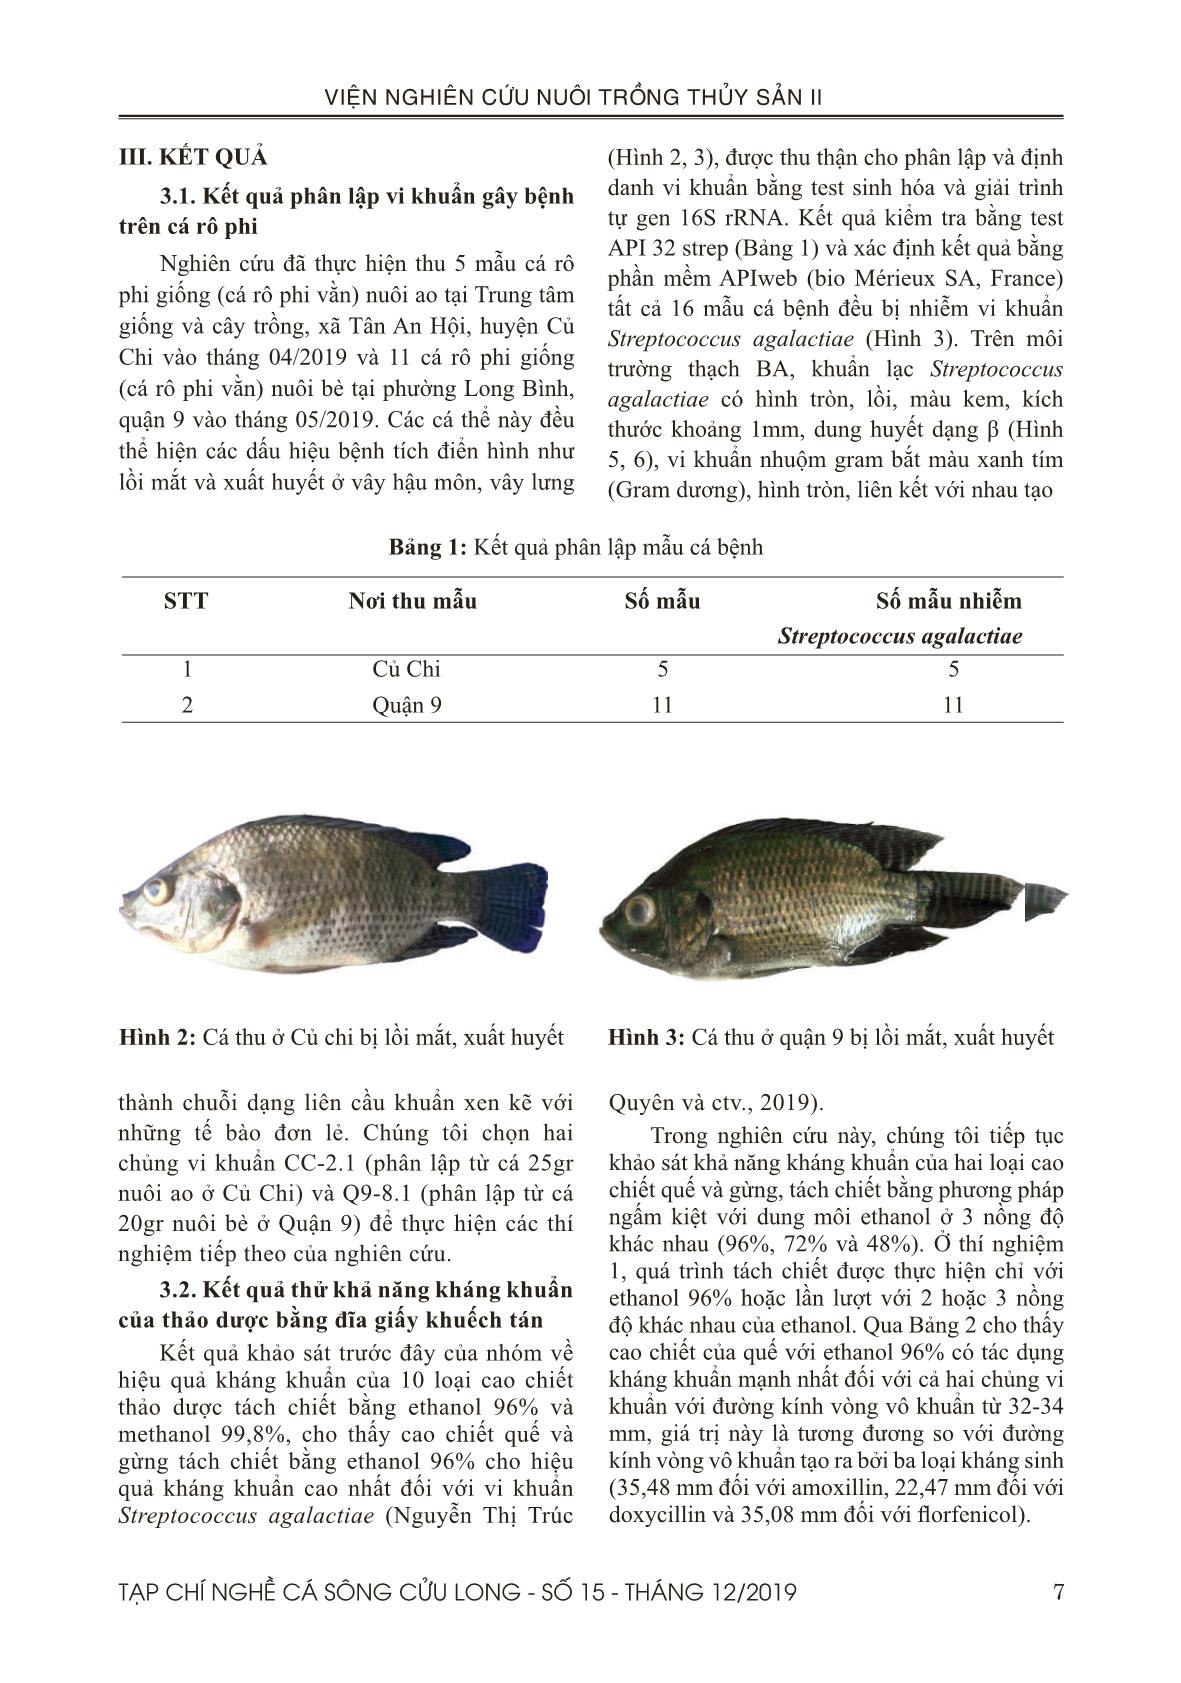 Tạp chí Nghề cá sông Cửu Long - Số 15 - Tháng 12/2019 trang 7